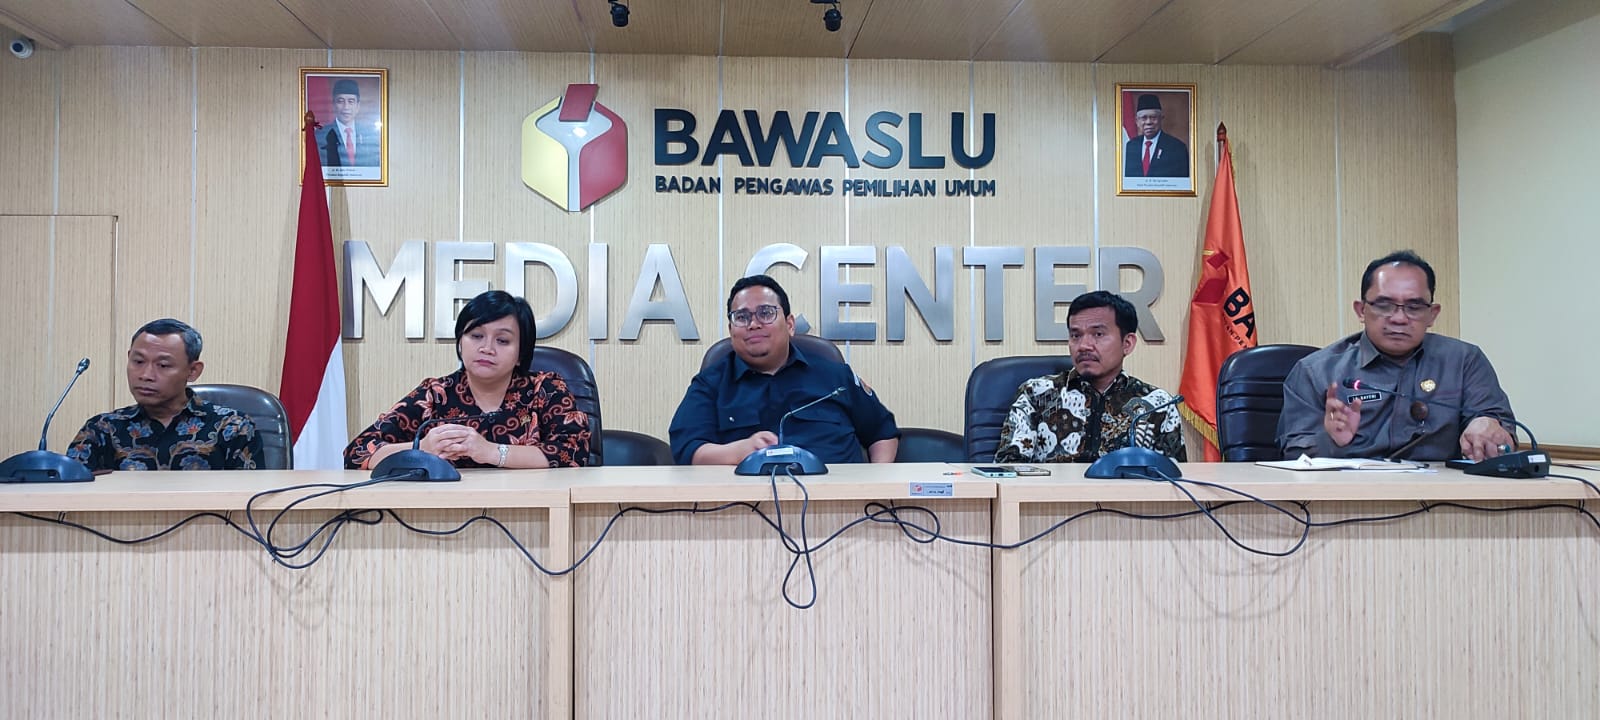 Komnas HAM Jumpa Pers Bersama Ketua Bawaslu RI, Rahmat Bagja di Media Center Bawaslu, Jakarta Pusat,